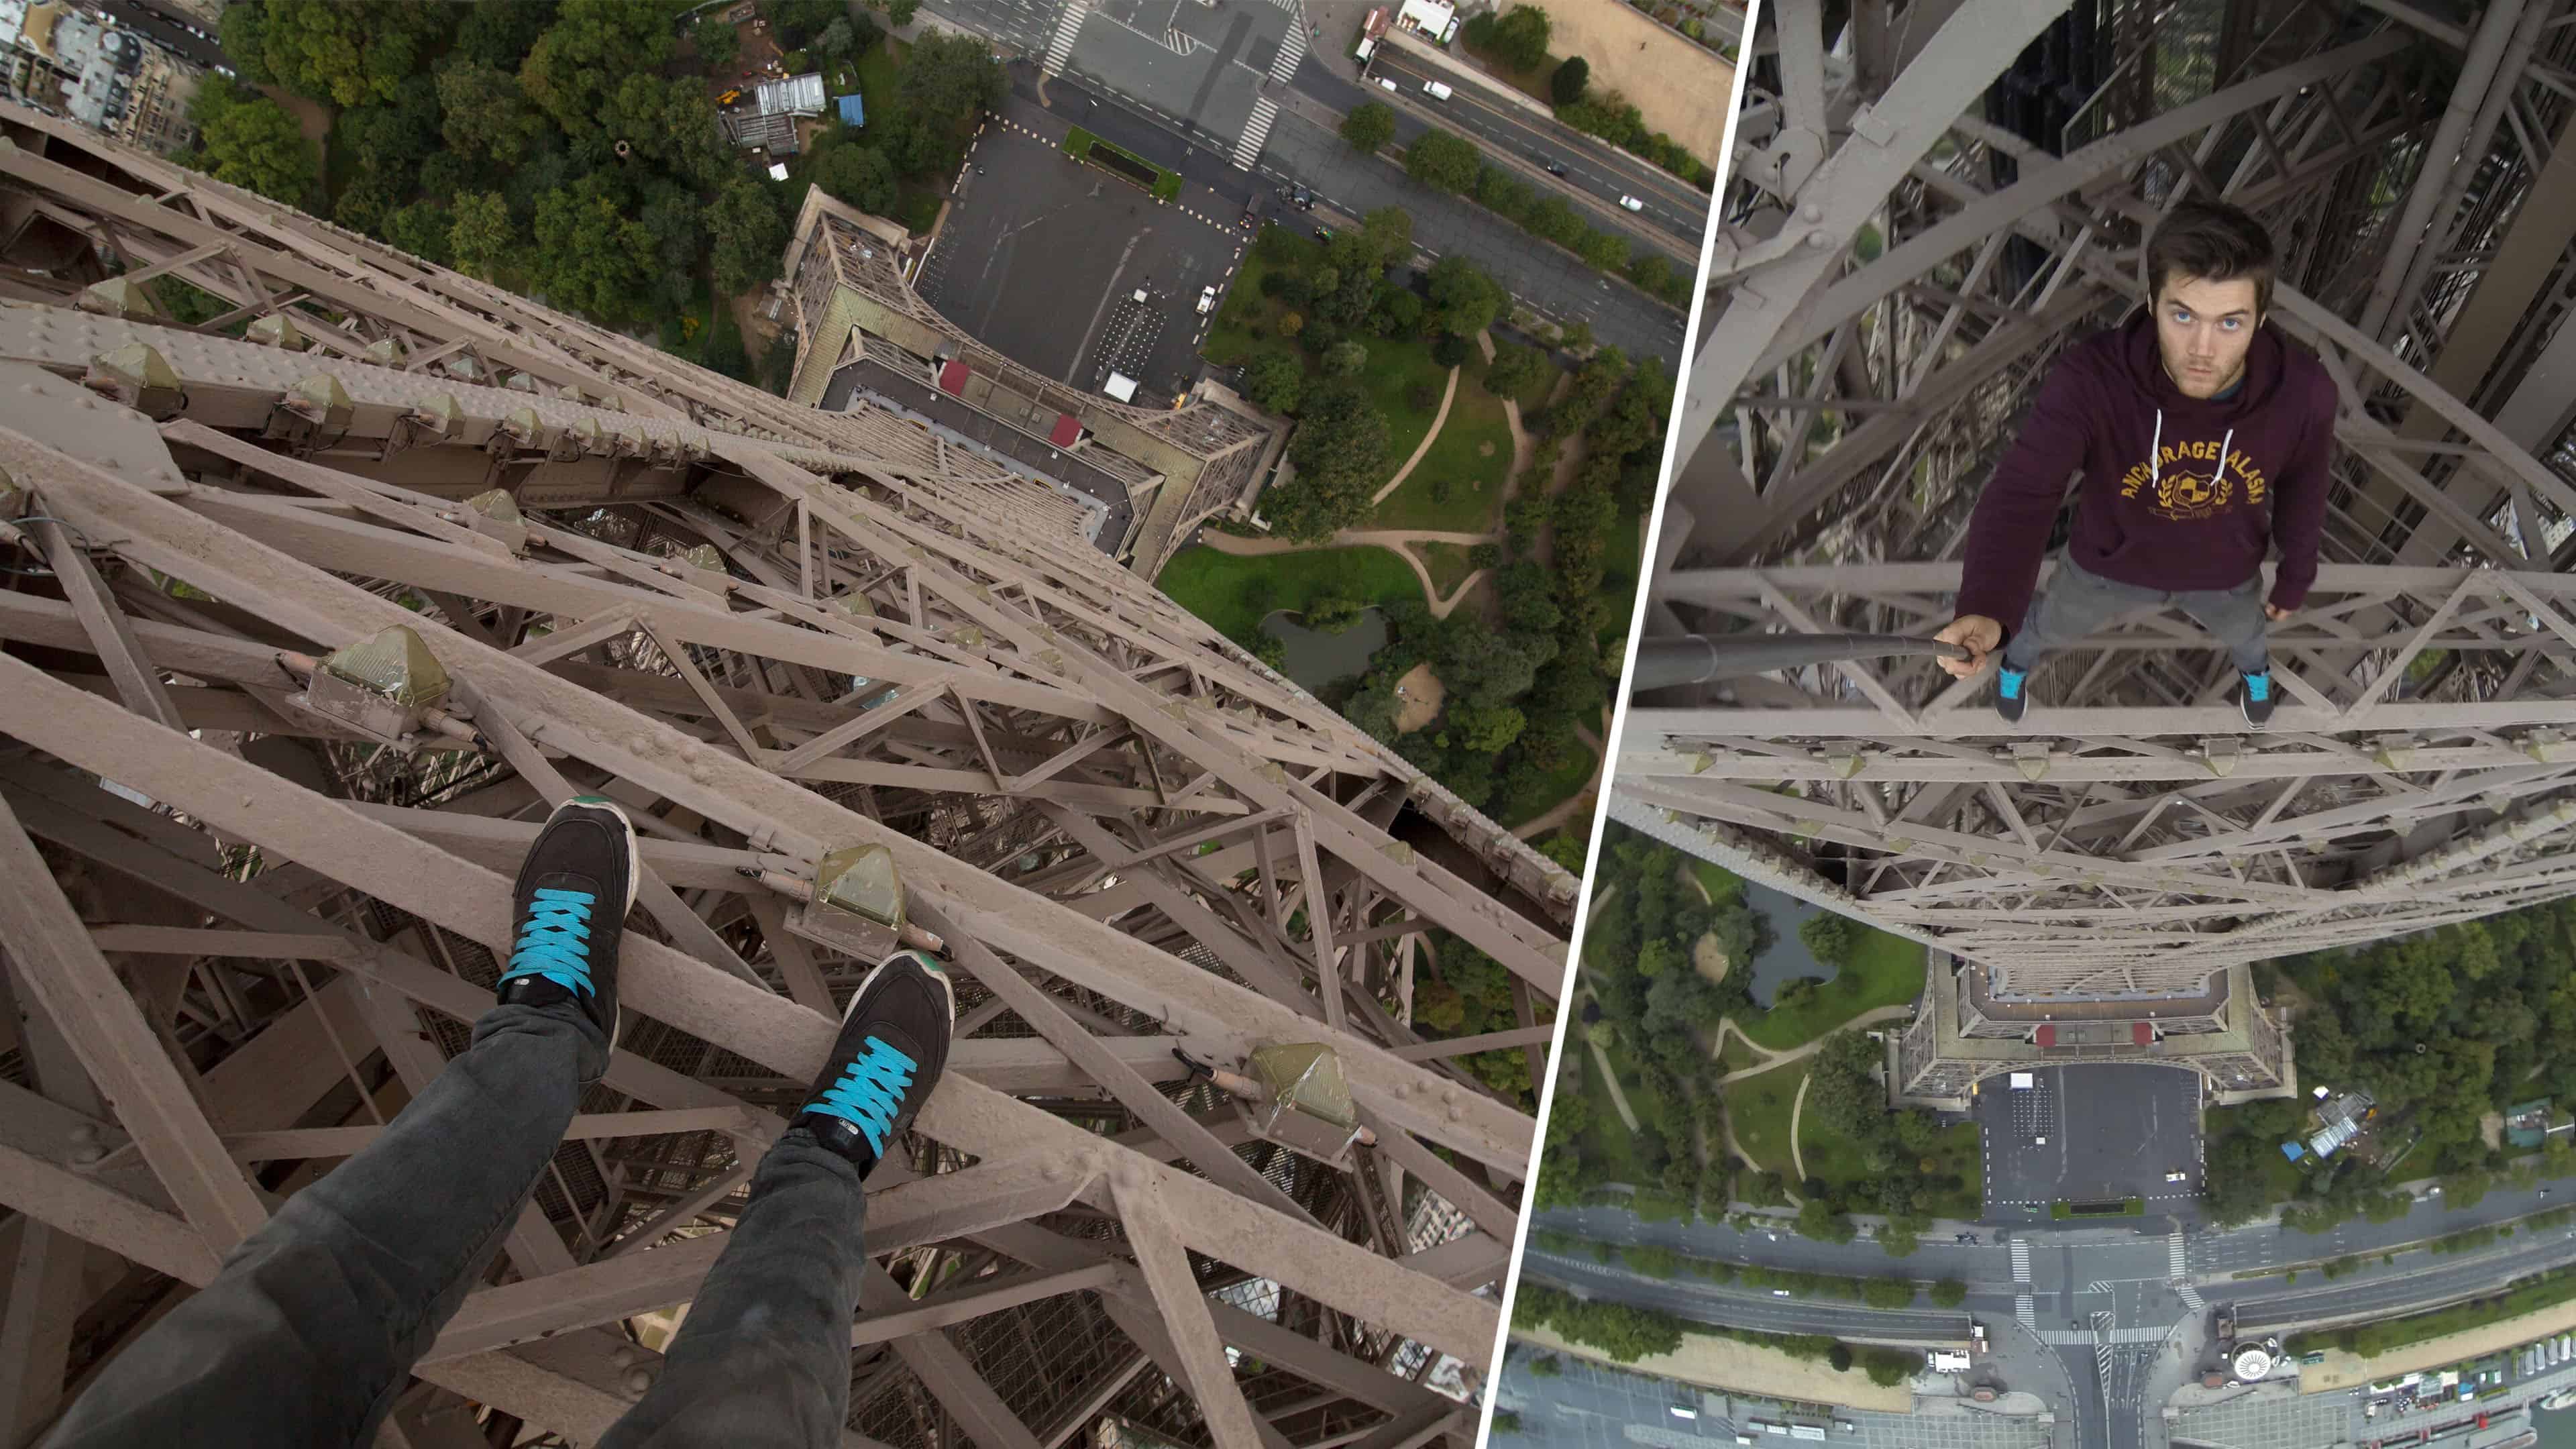 Klatre op i Eiffeltårnet uden sikkerhedsforholdsregler